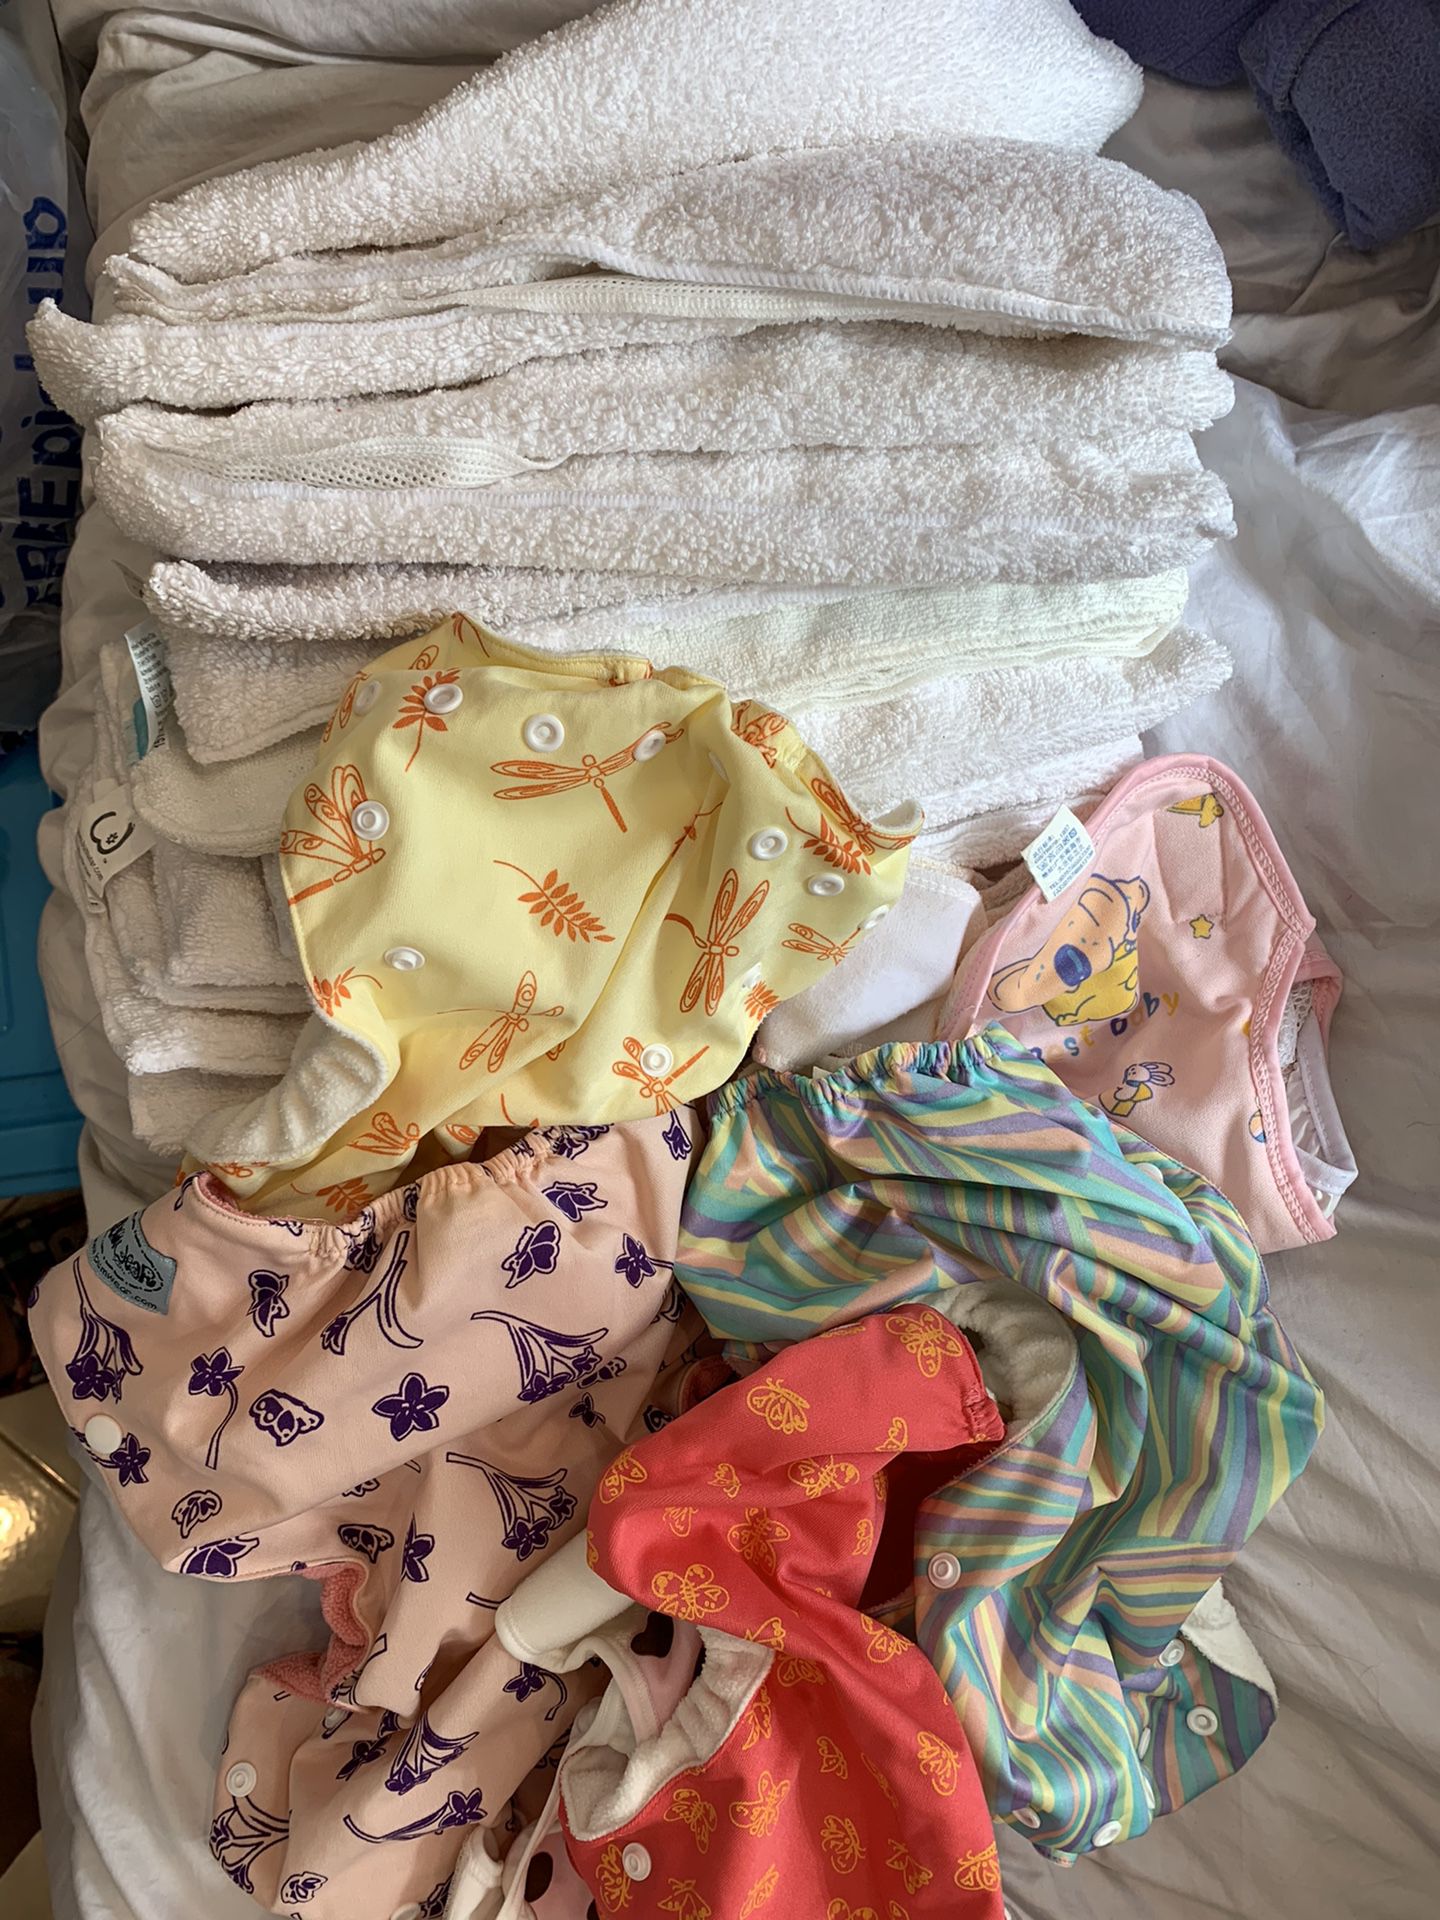 Bundles of clothes diaper